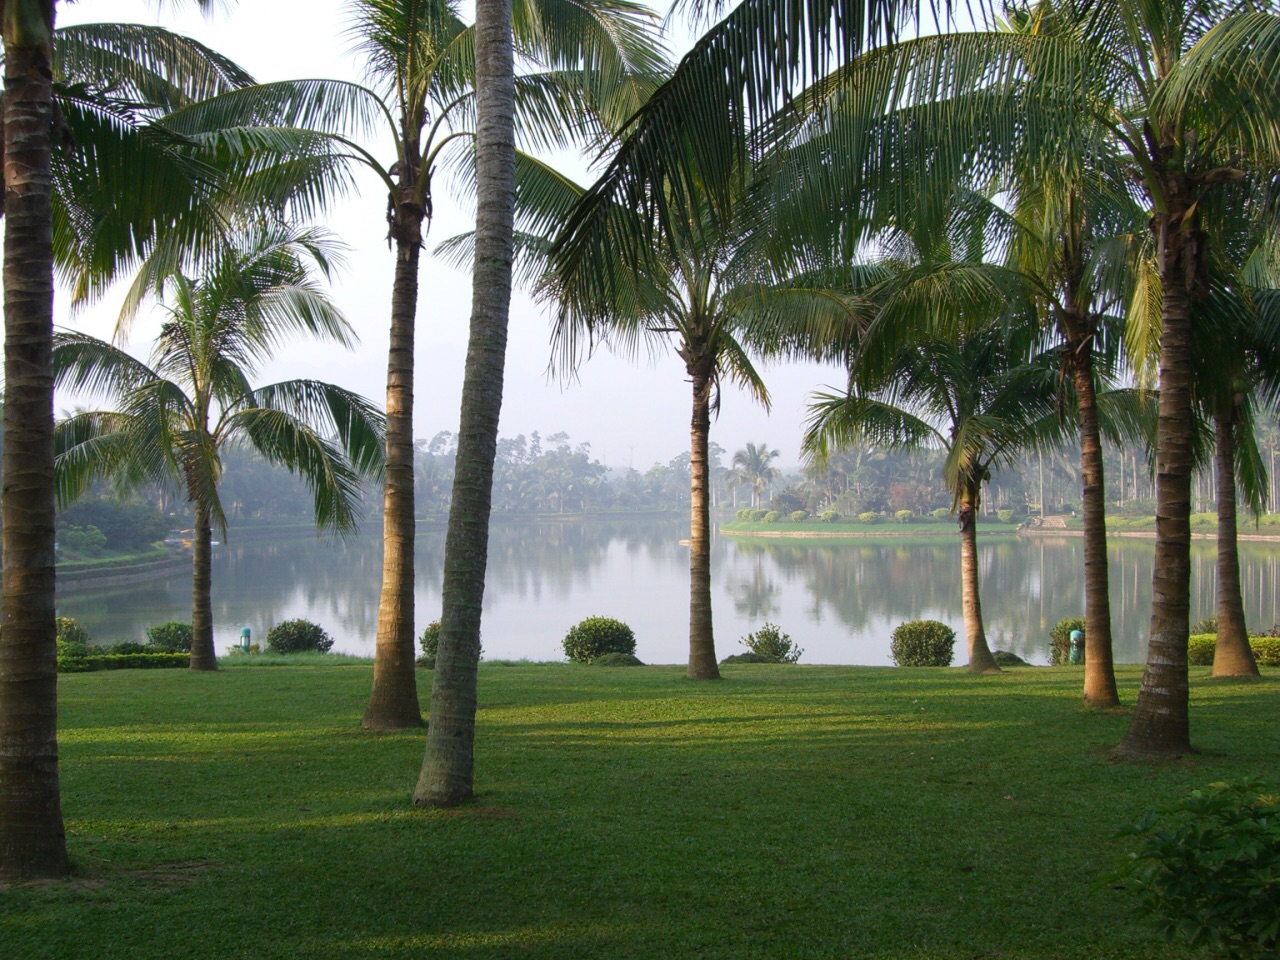 【携程攻略】万宁兴隆热带植物园景点,兴隆热带植物园位于海南万宁市兴隆镇南部，园内以独特丰富的热带植物…